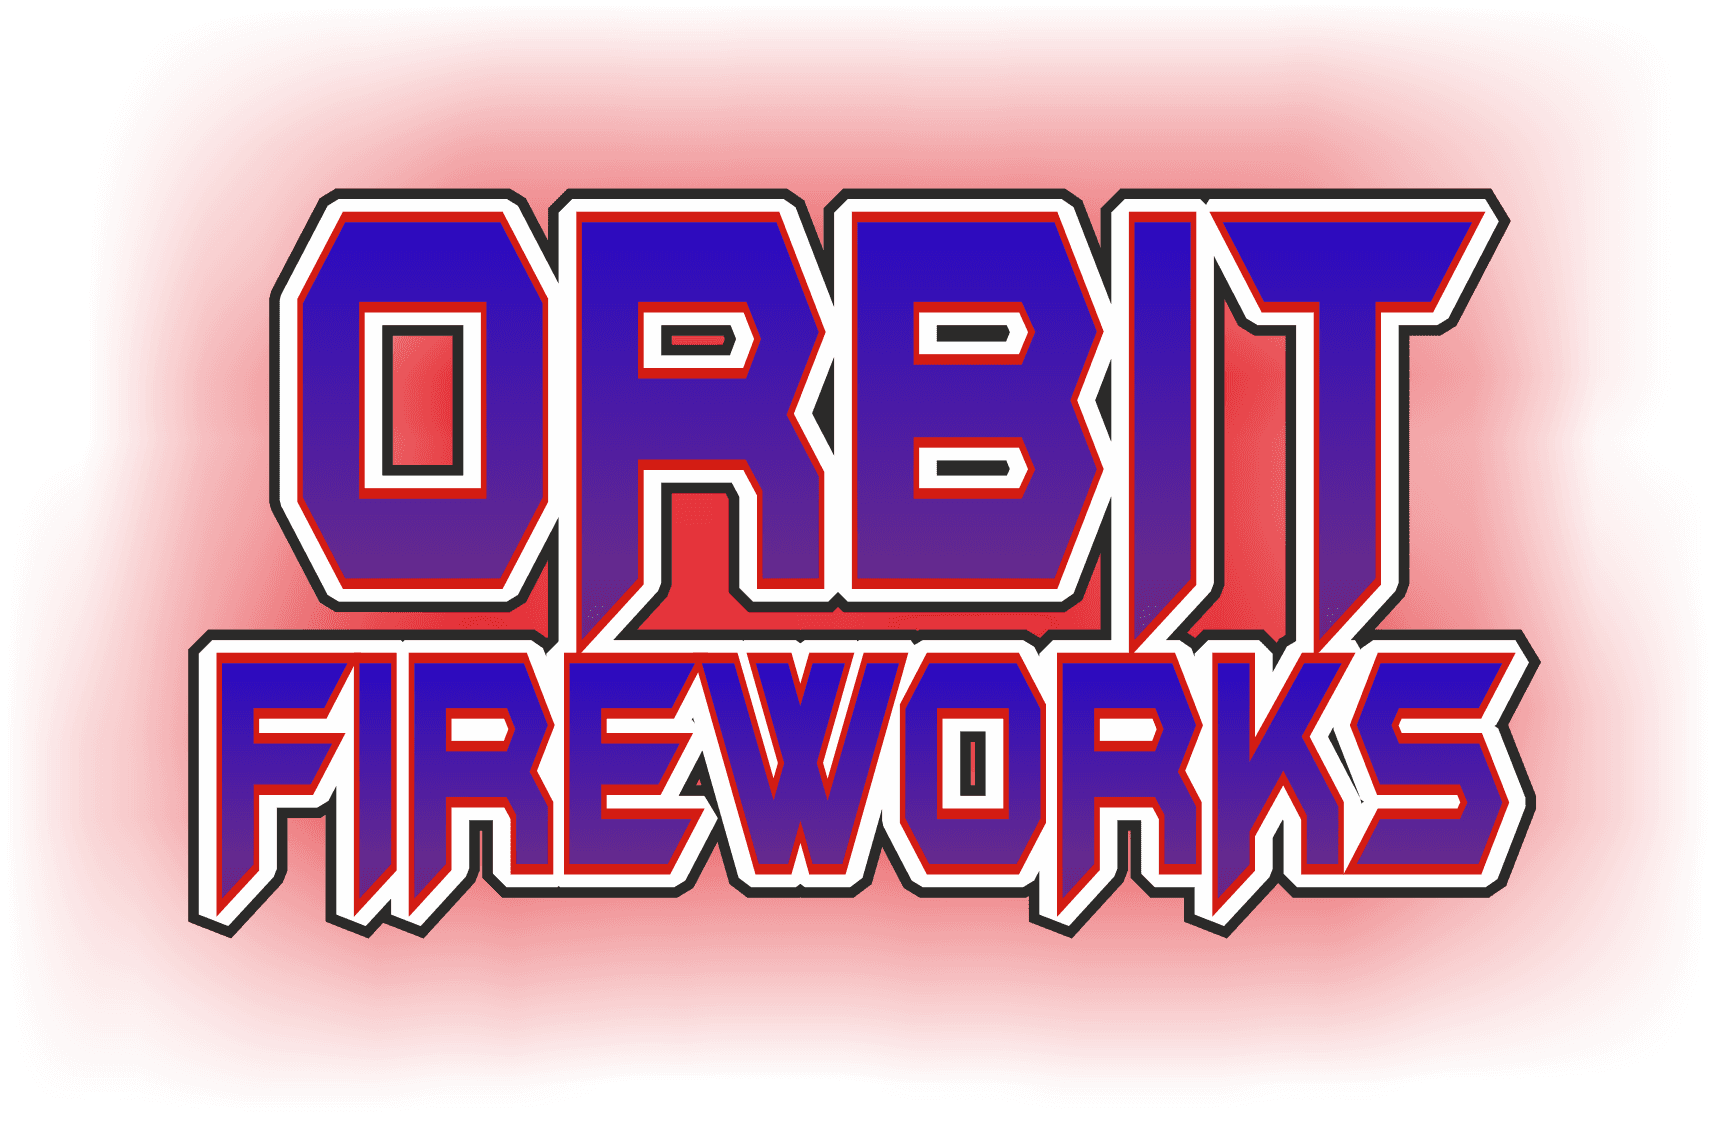 Orbit Fireworks Shop Swansea